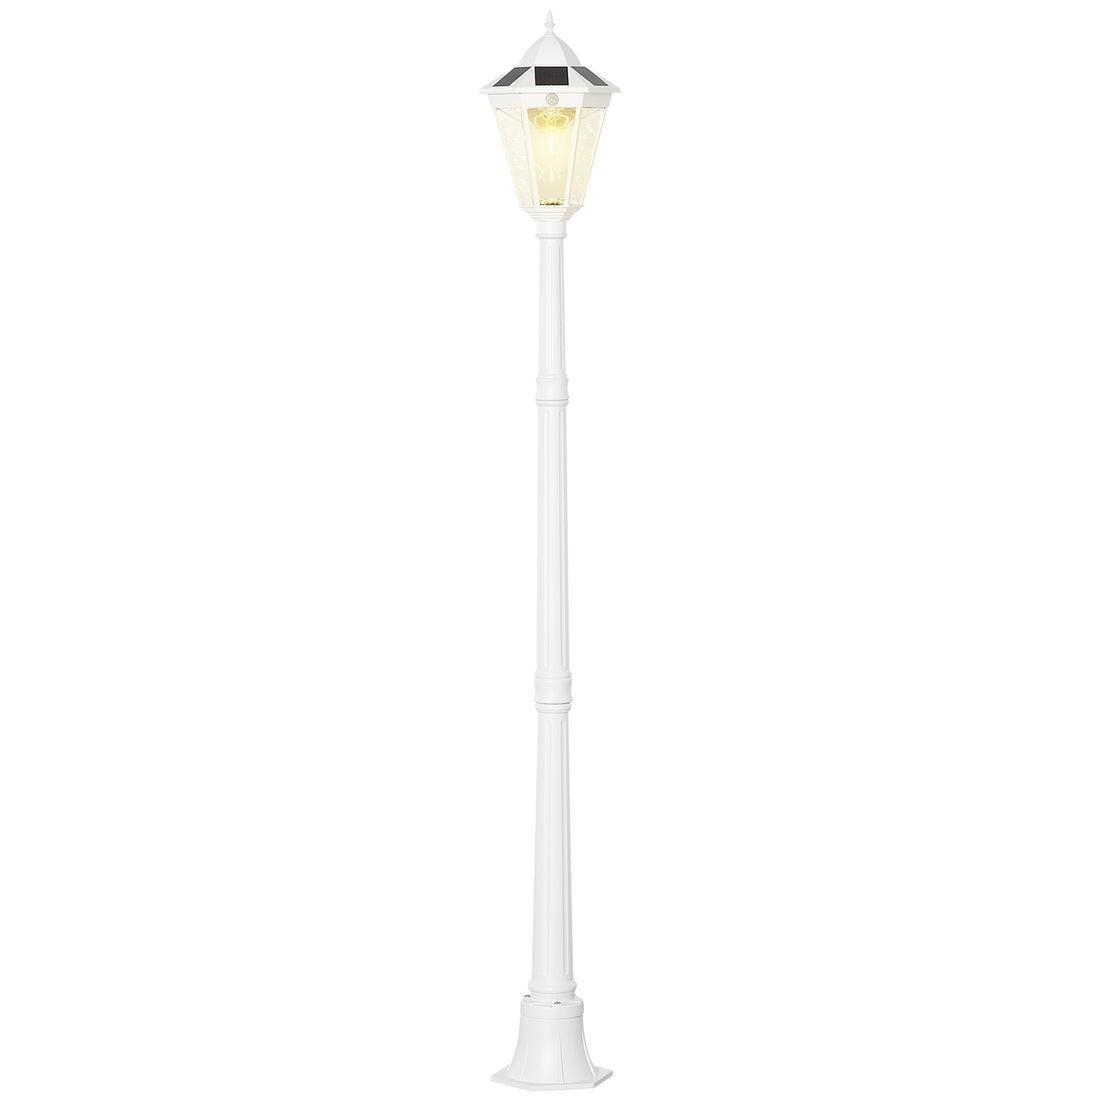 77" Solar Lamp Post Light, Waterproof Aluminum